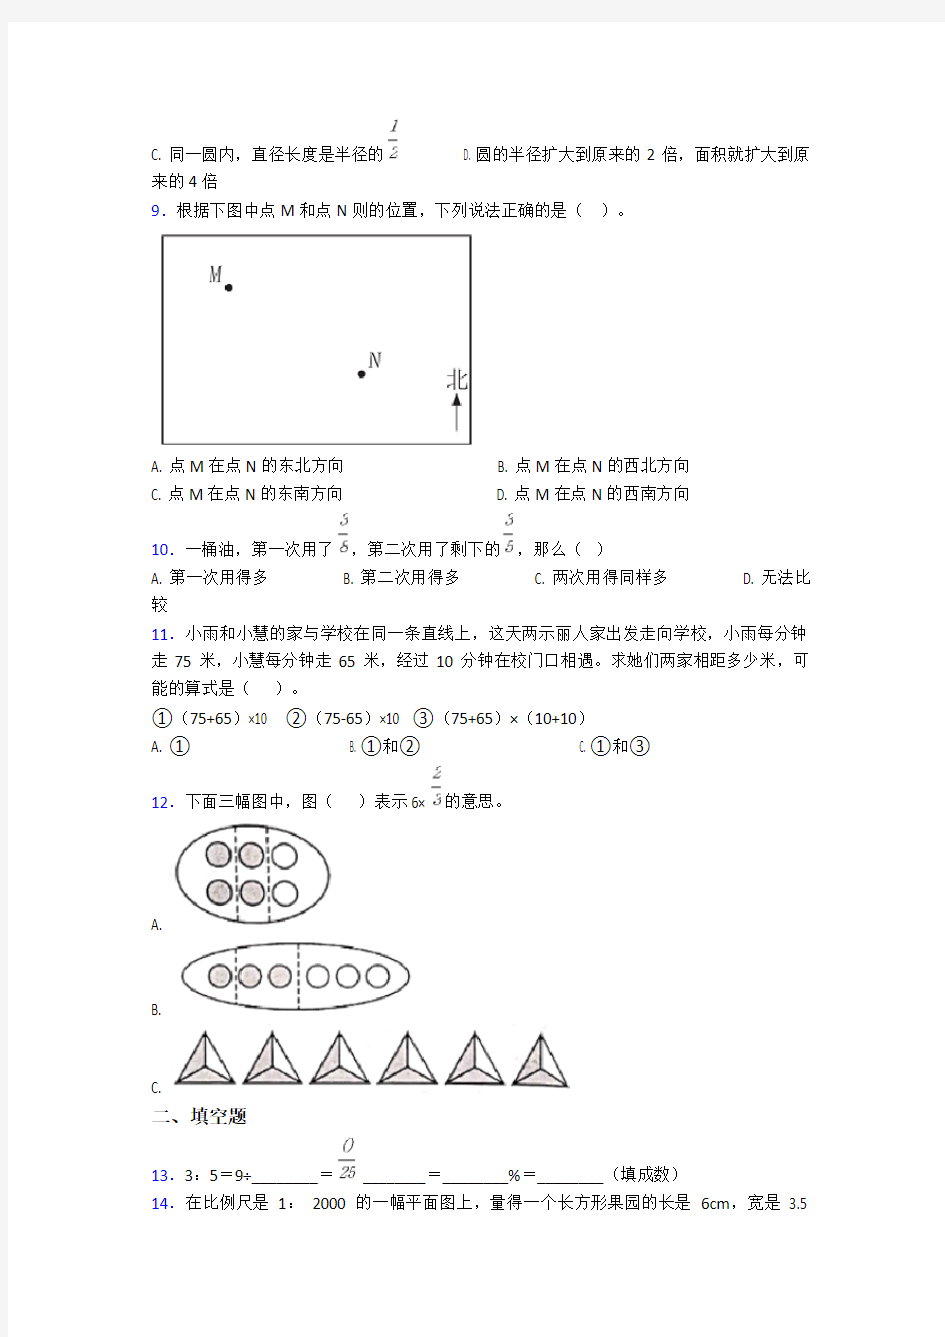 【冲刺卷】小学数学小升初模拟试卷(附答案)